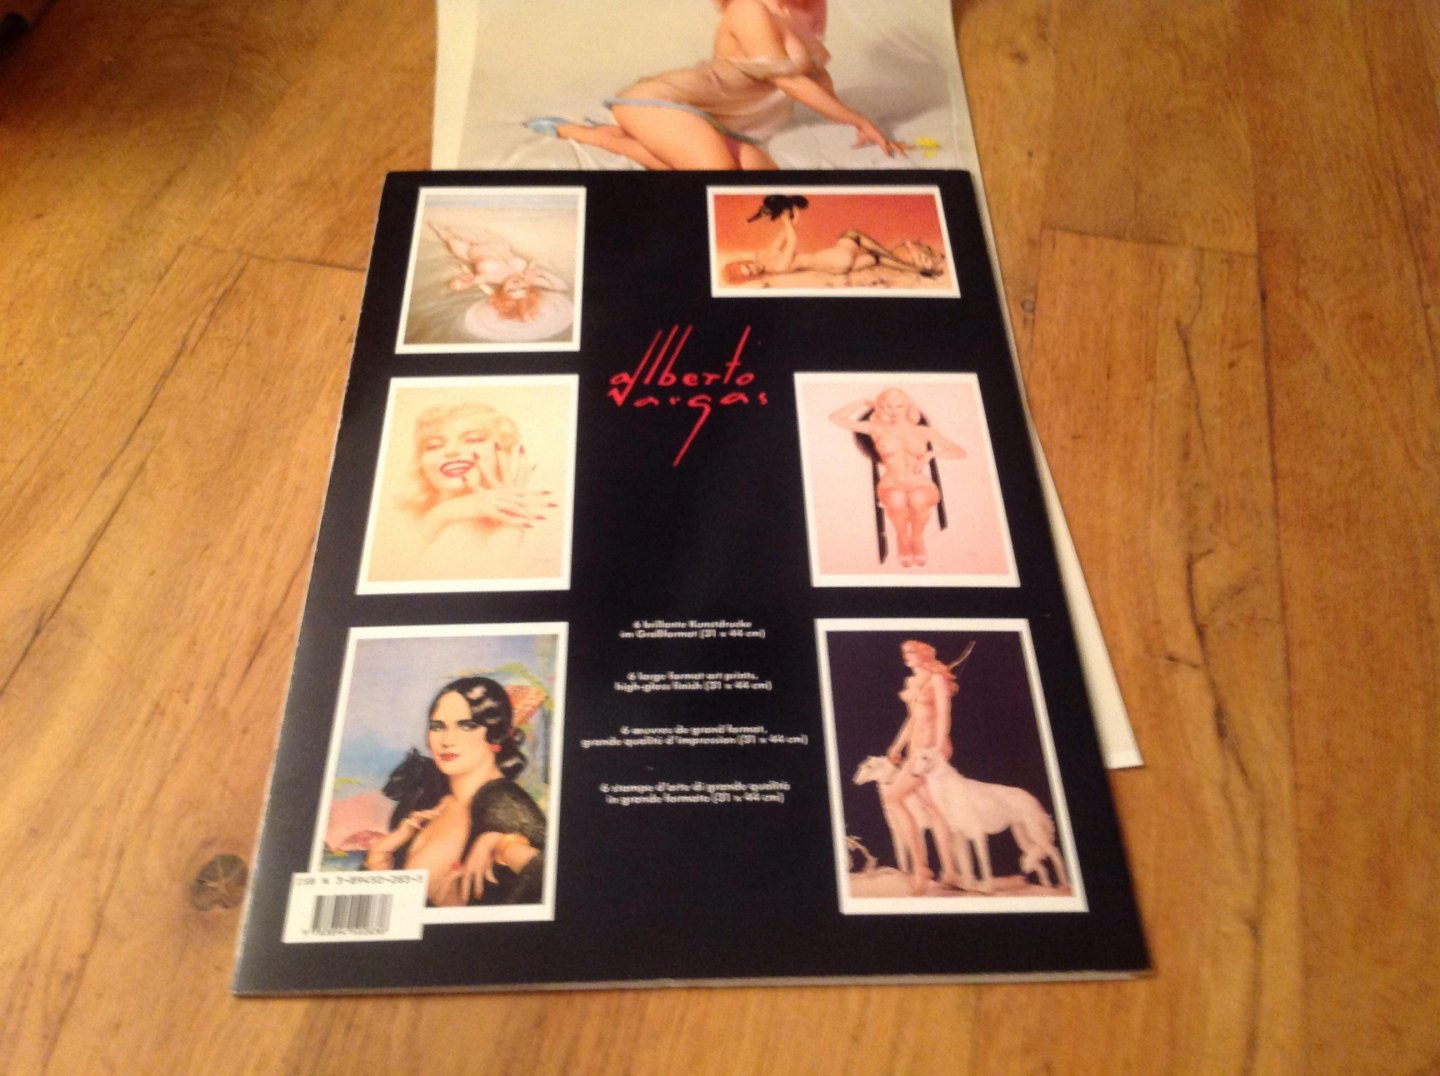 Vargas - Alberti Vargas Posterboek met zes fraaie posters